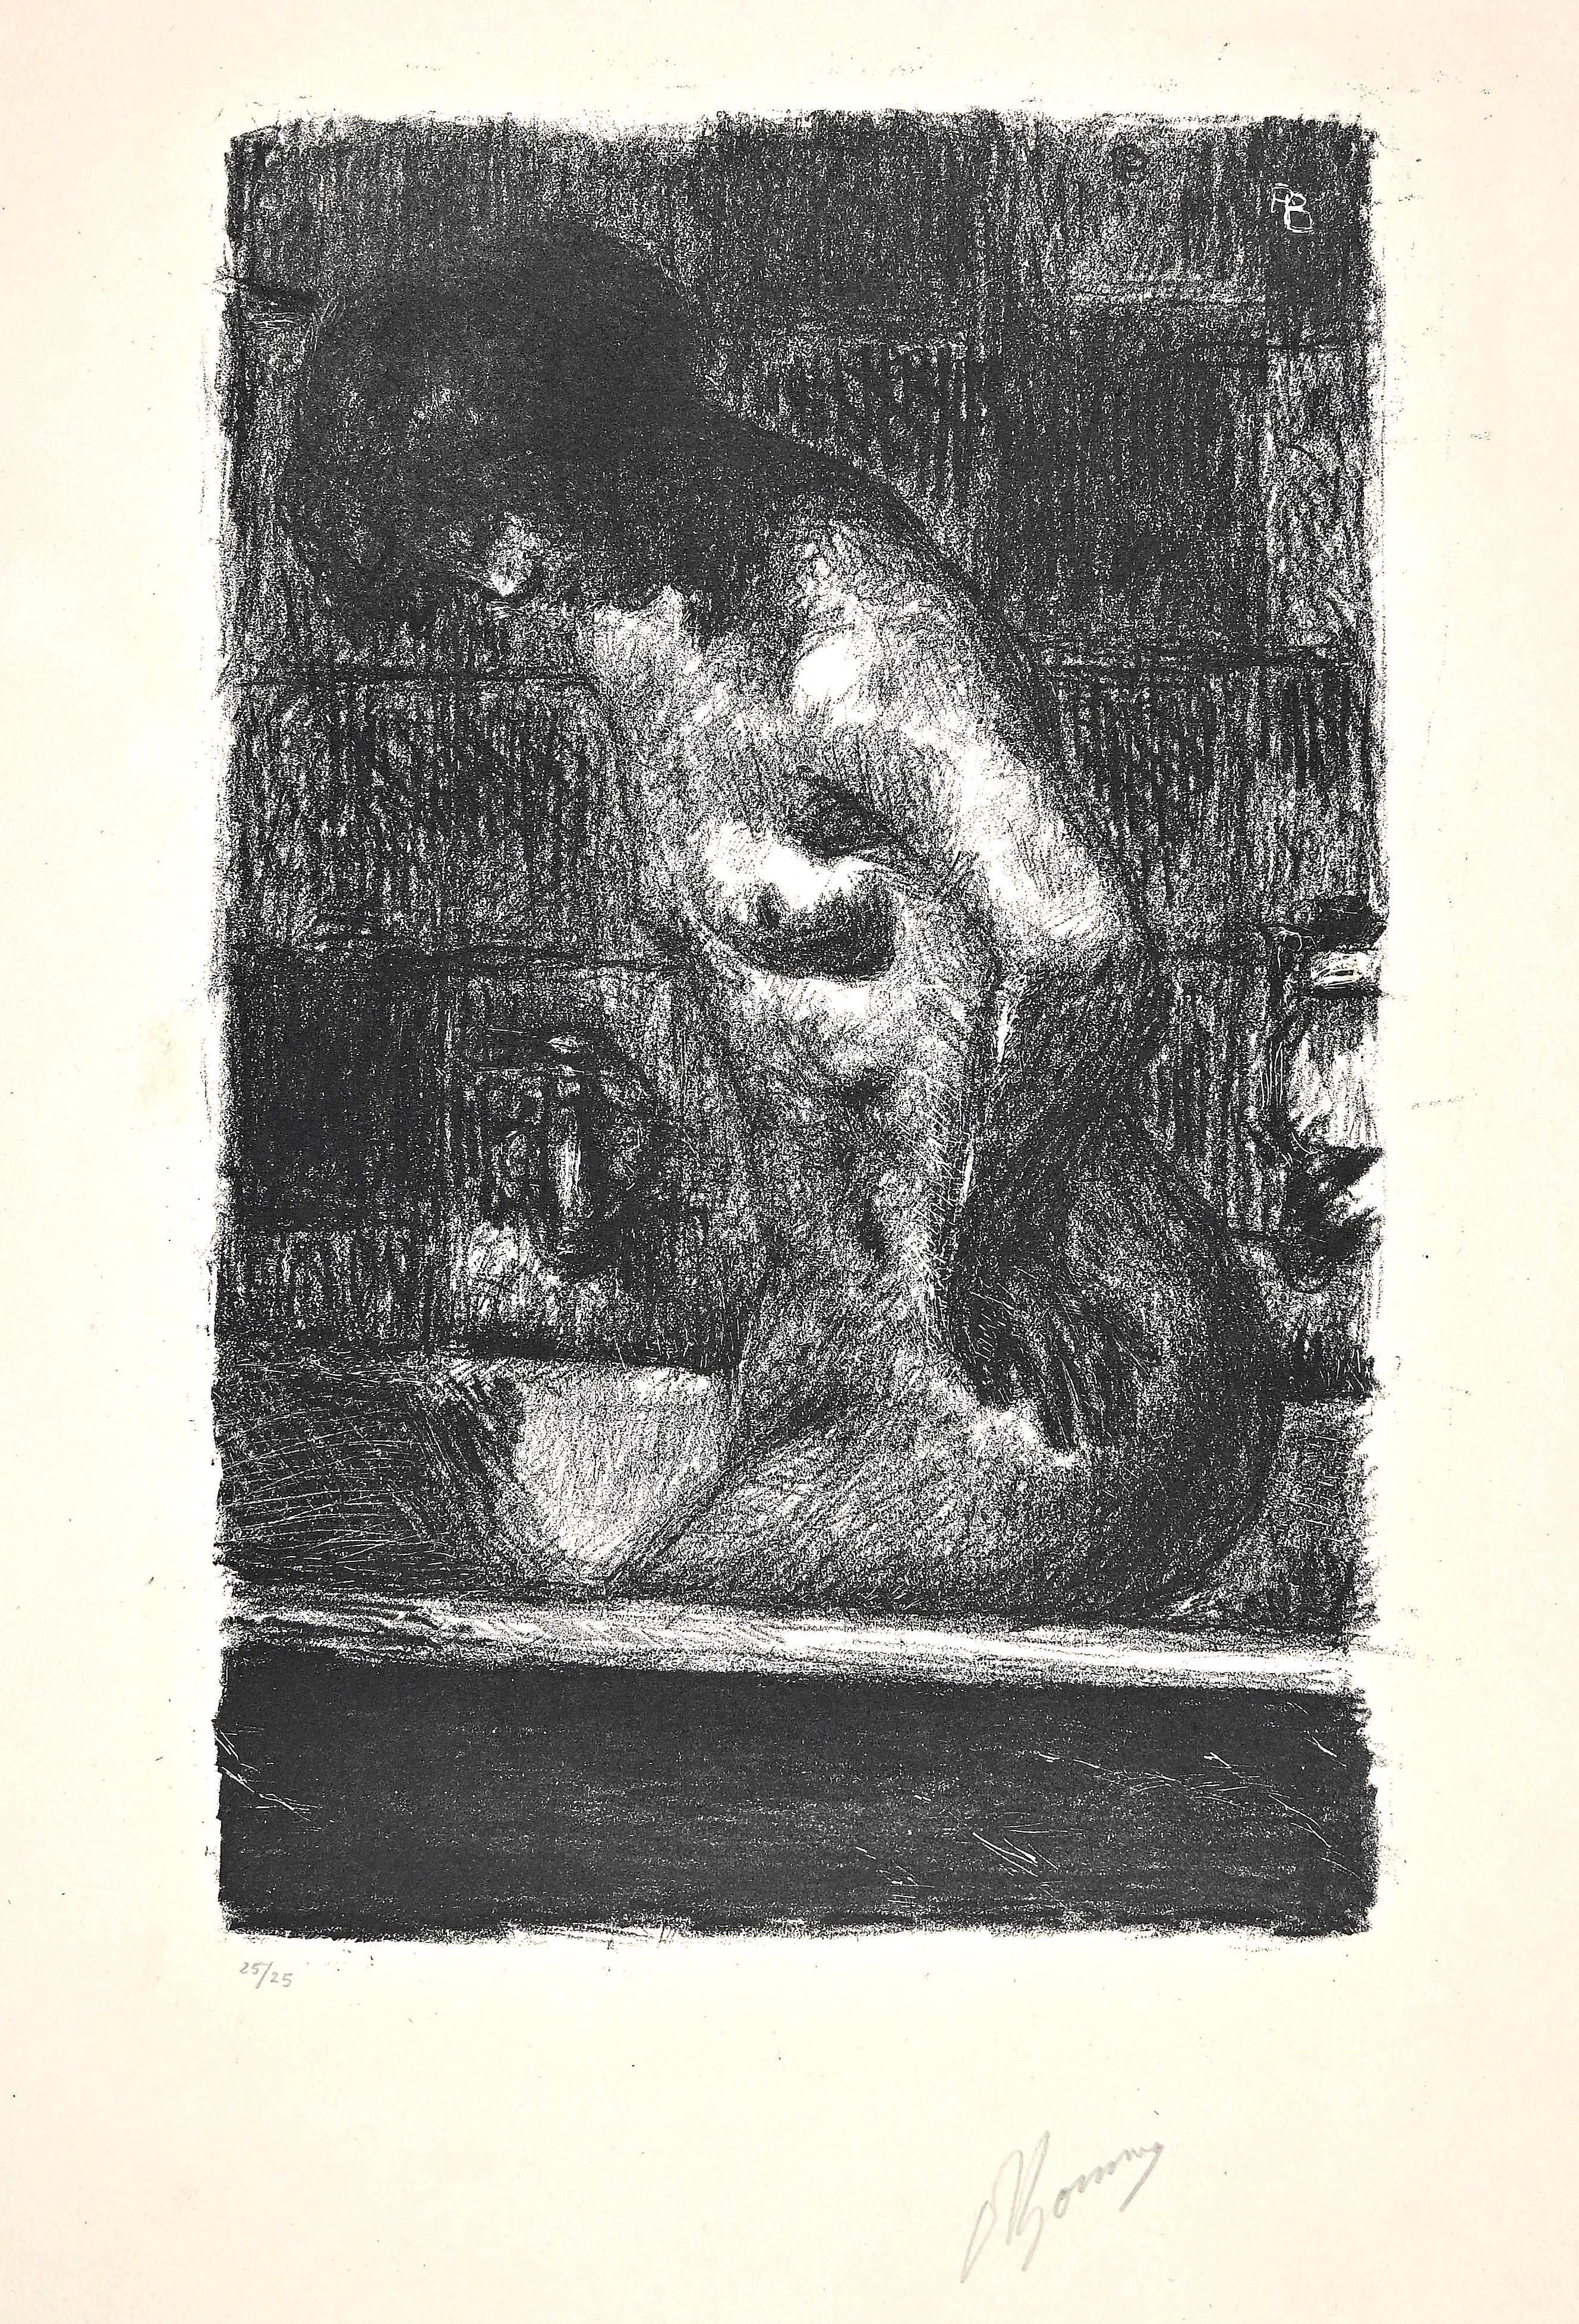 Femme Debout dans sa Baignoire - Litografía de Pierre Bonnard - Años 20